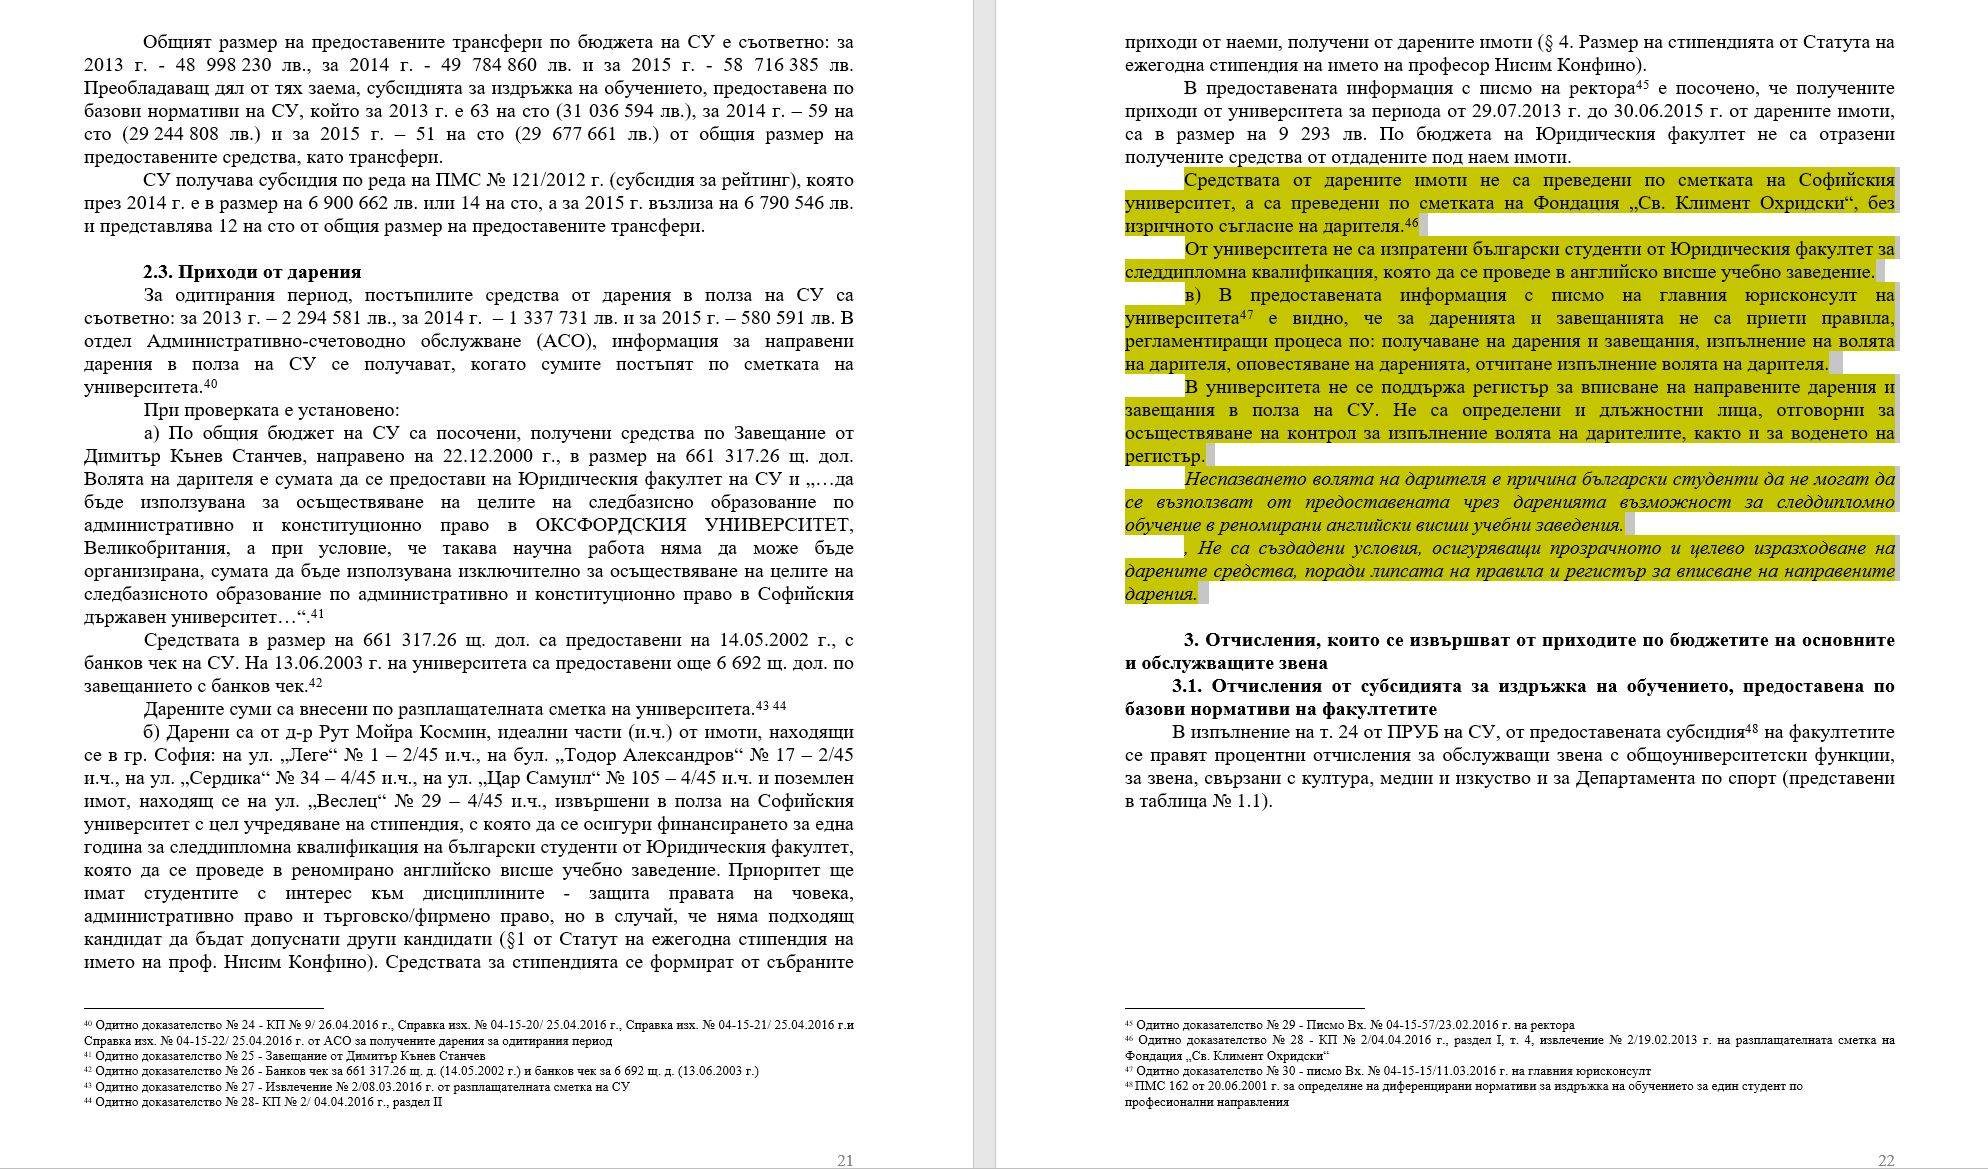 Доклад на Сметната палата, стр. 21-22